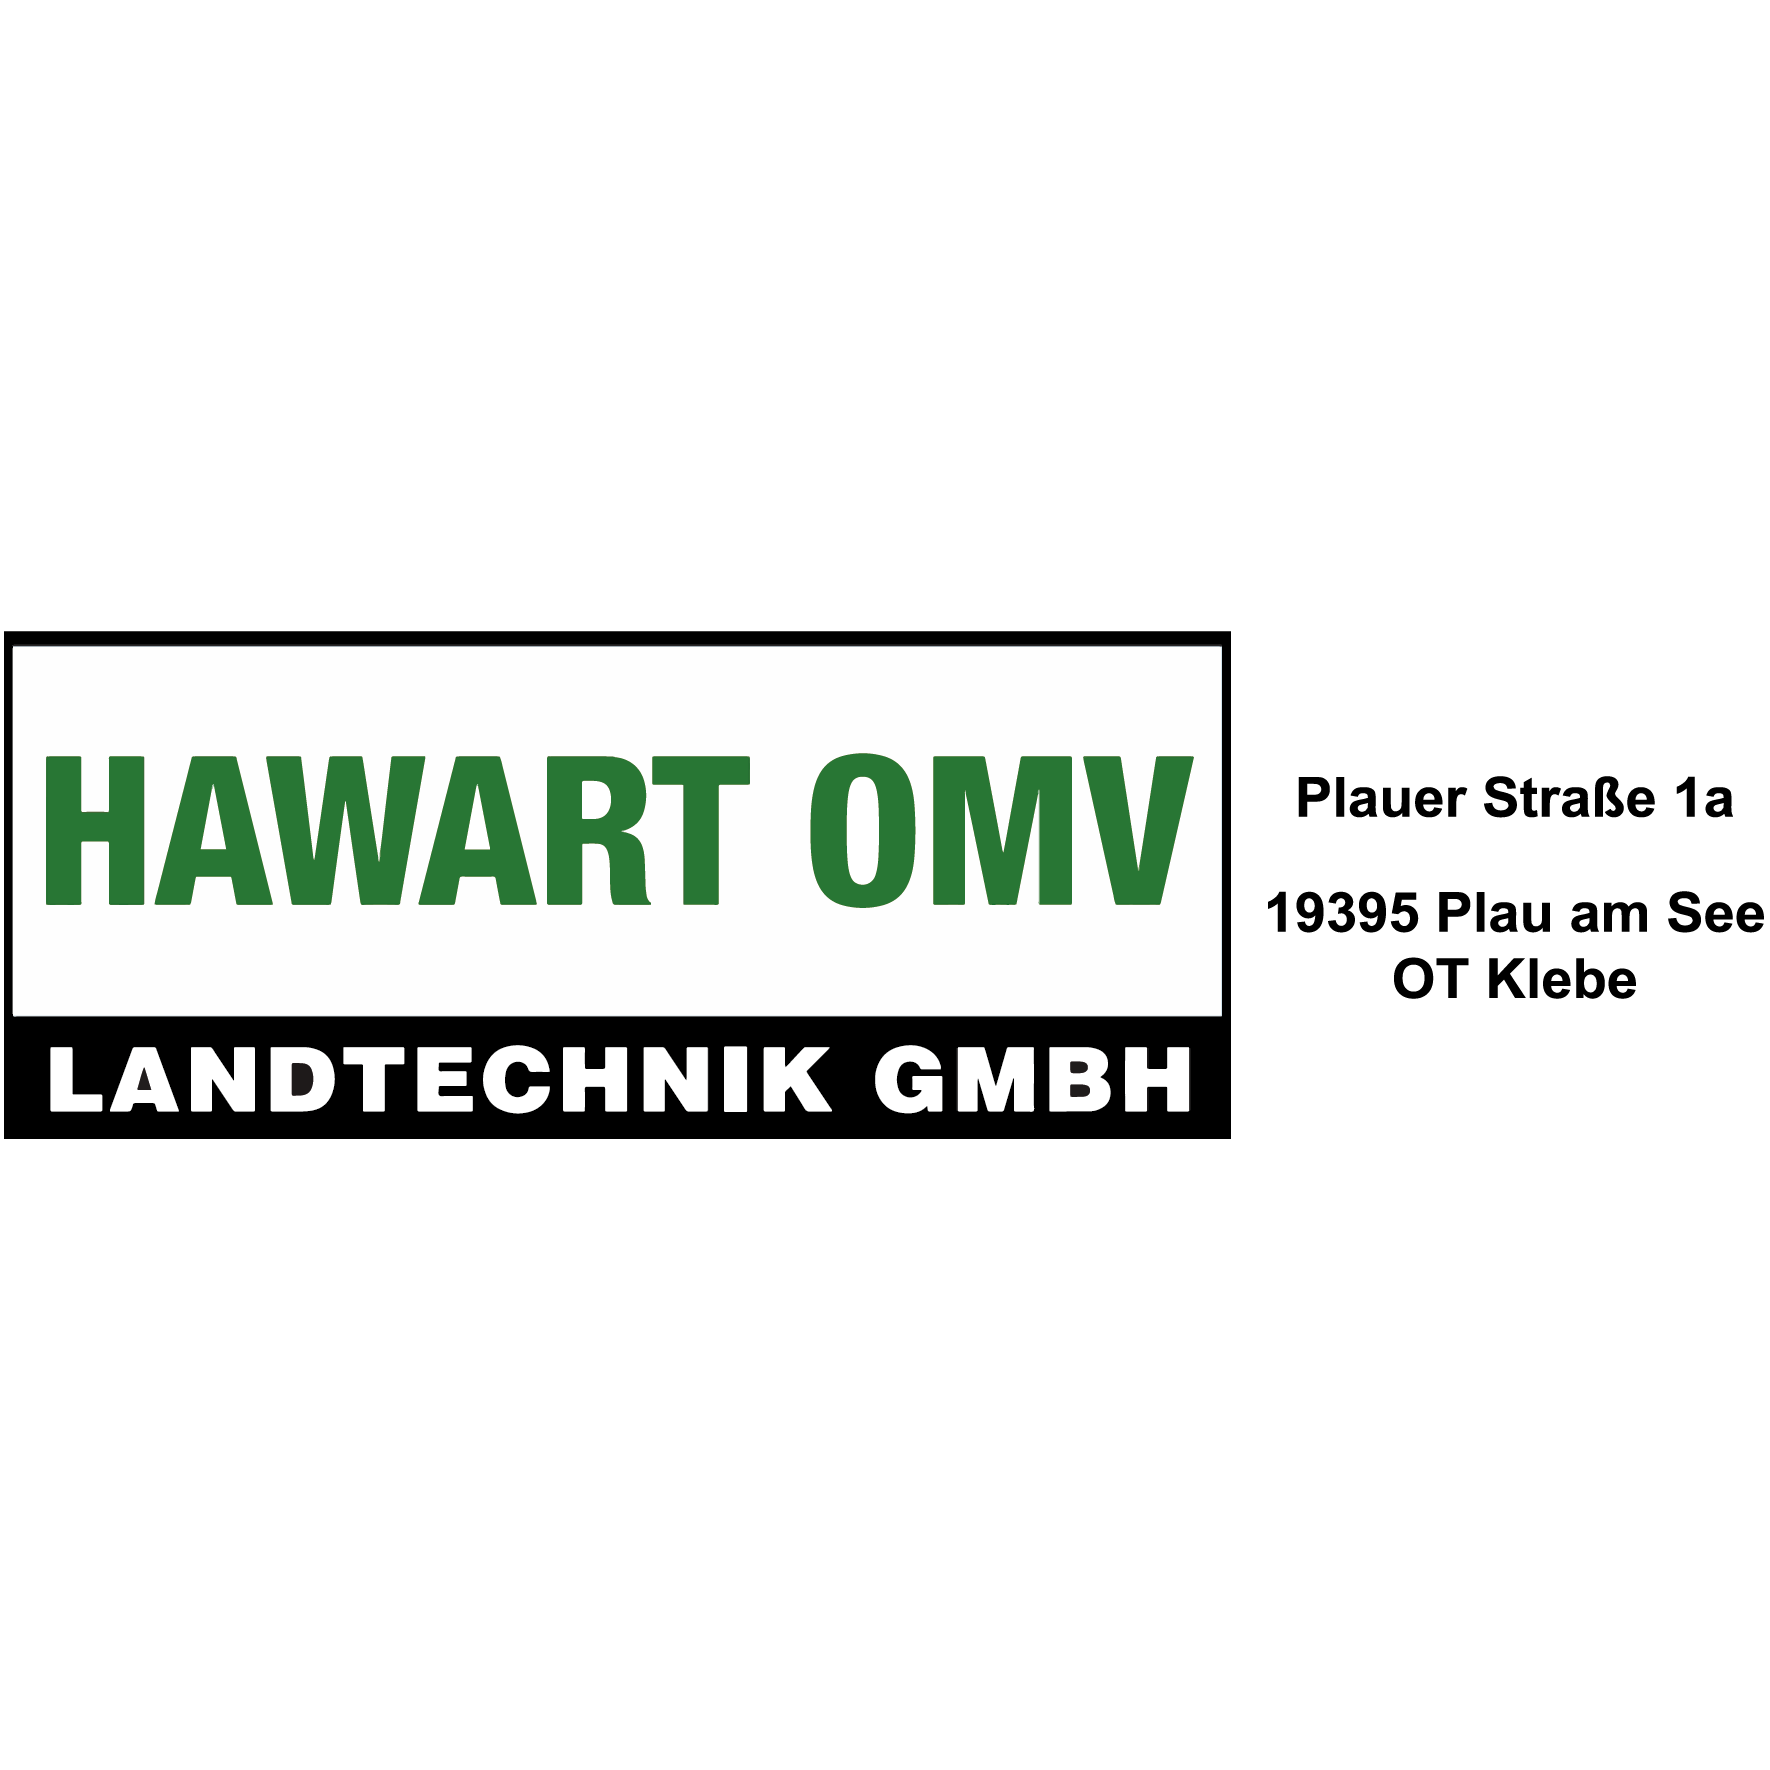 Hawart OMV Landtechnik GmbH in Klebe Stadt Plau am See - Logo